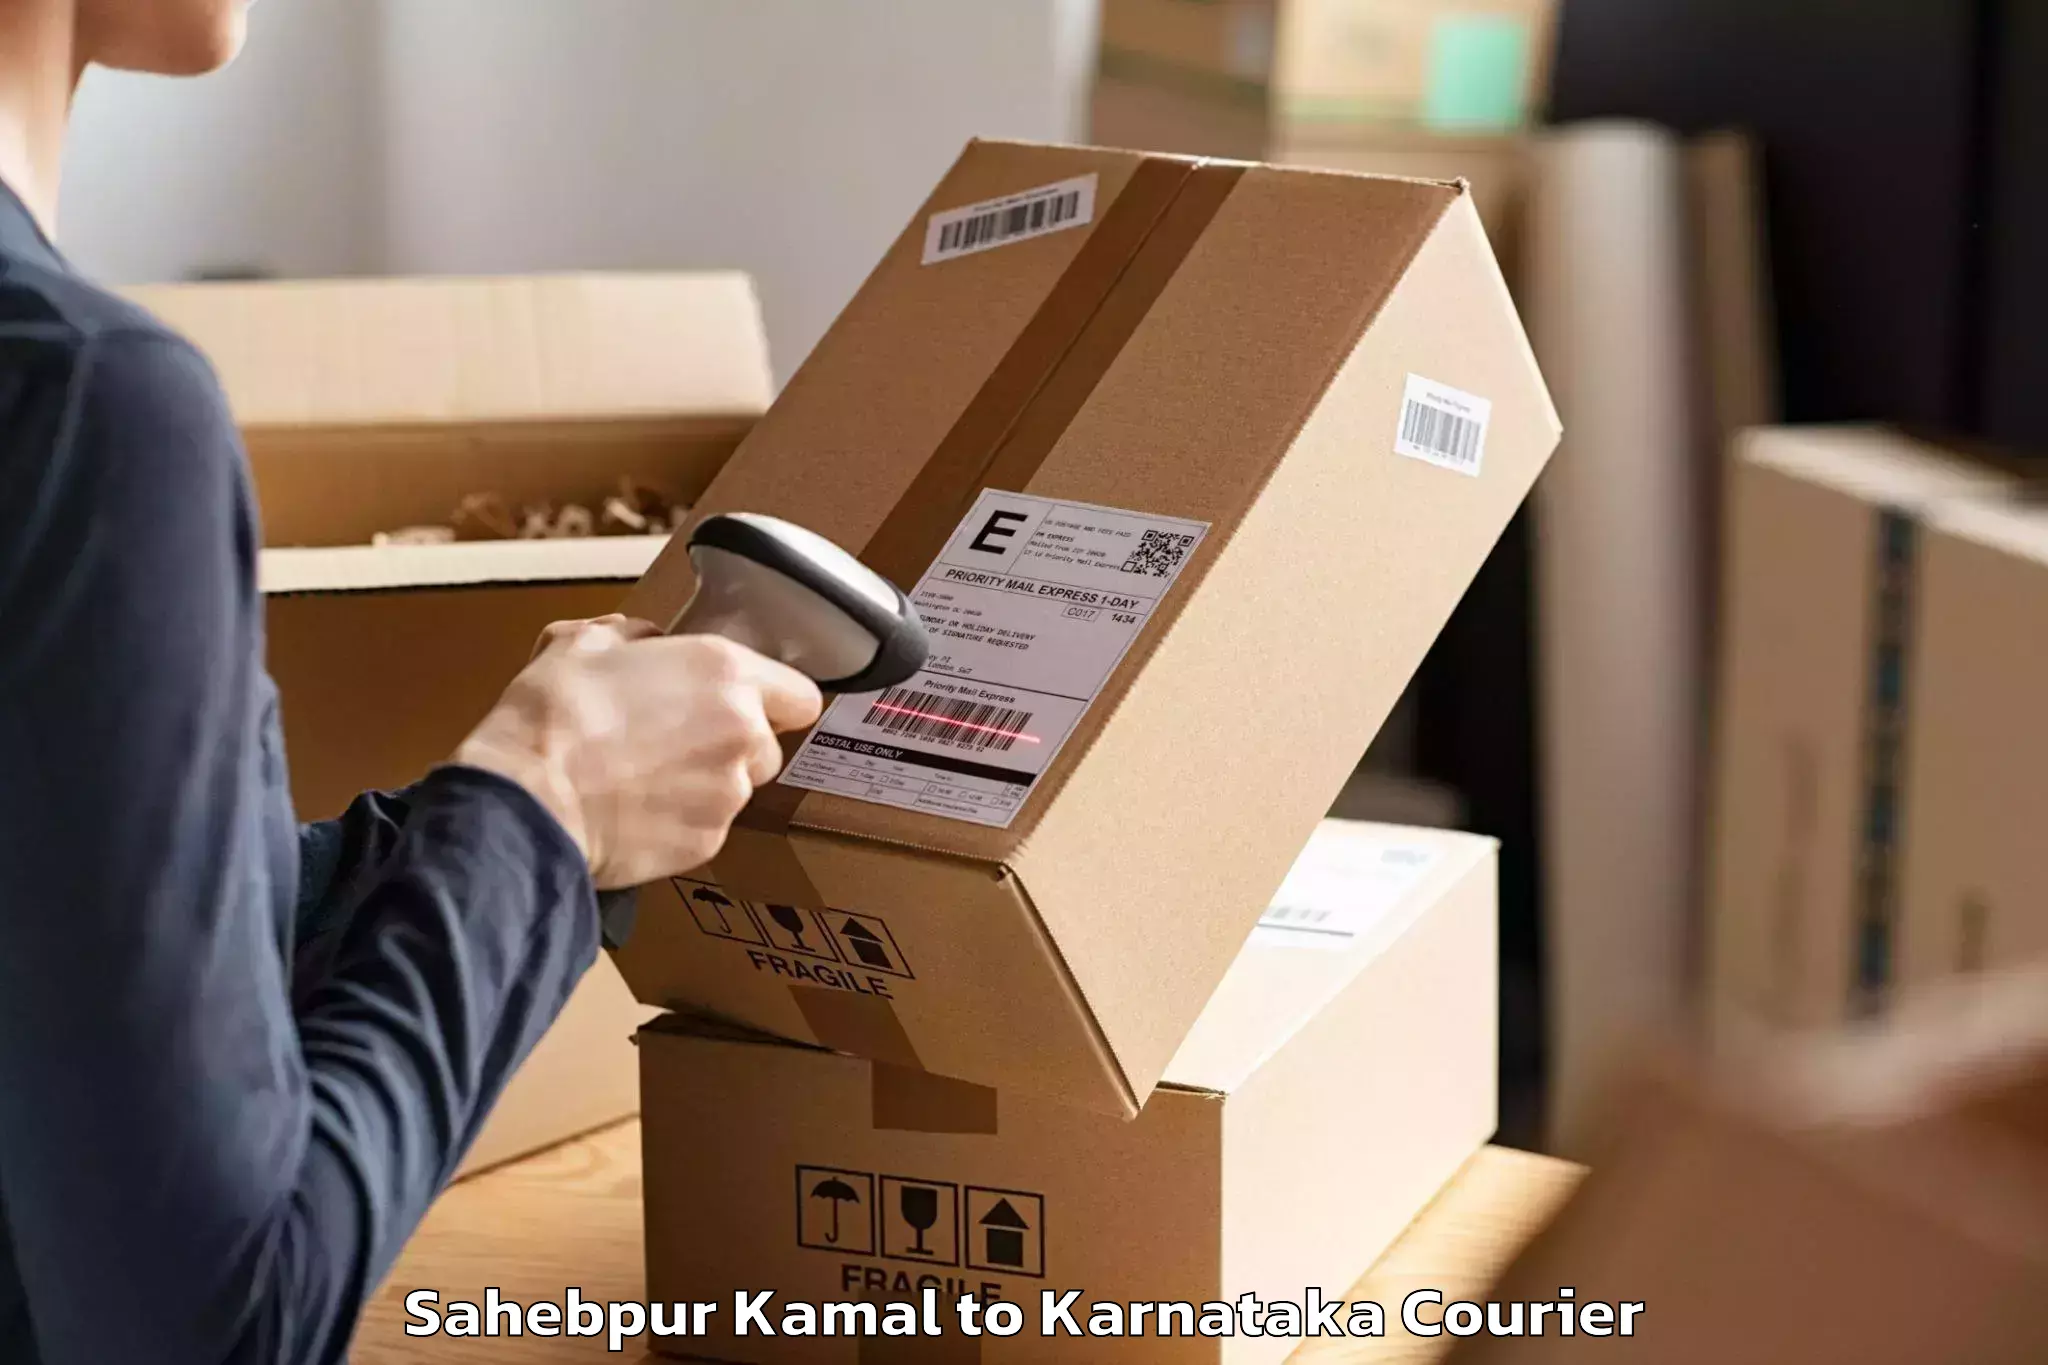 Trusted moving company Sahebpur Kamal to Mundgod